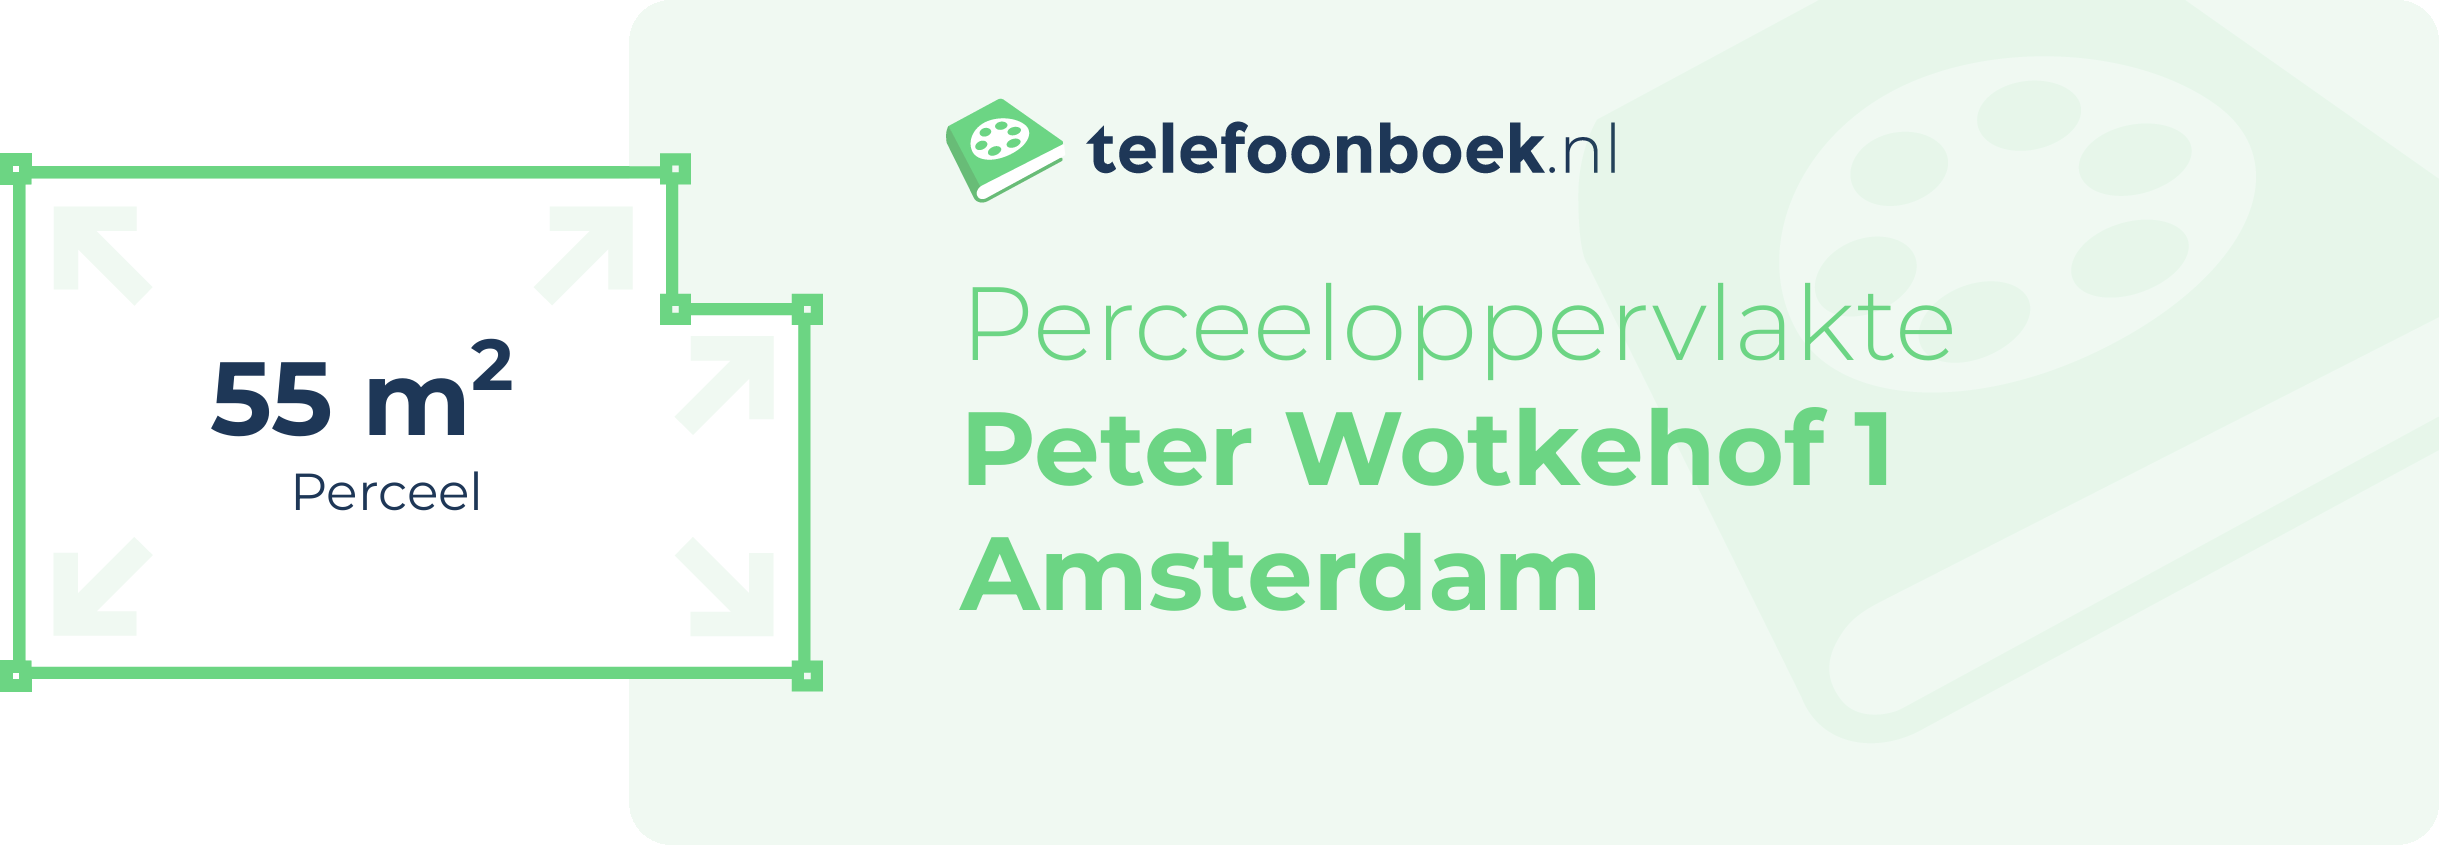 Perceeloppervlakte Peter Wotkehof 1 Amsterdam